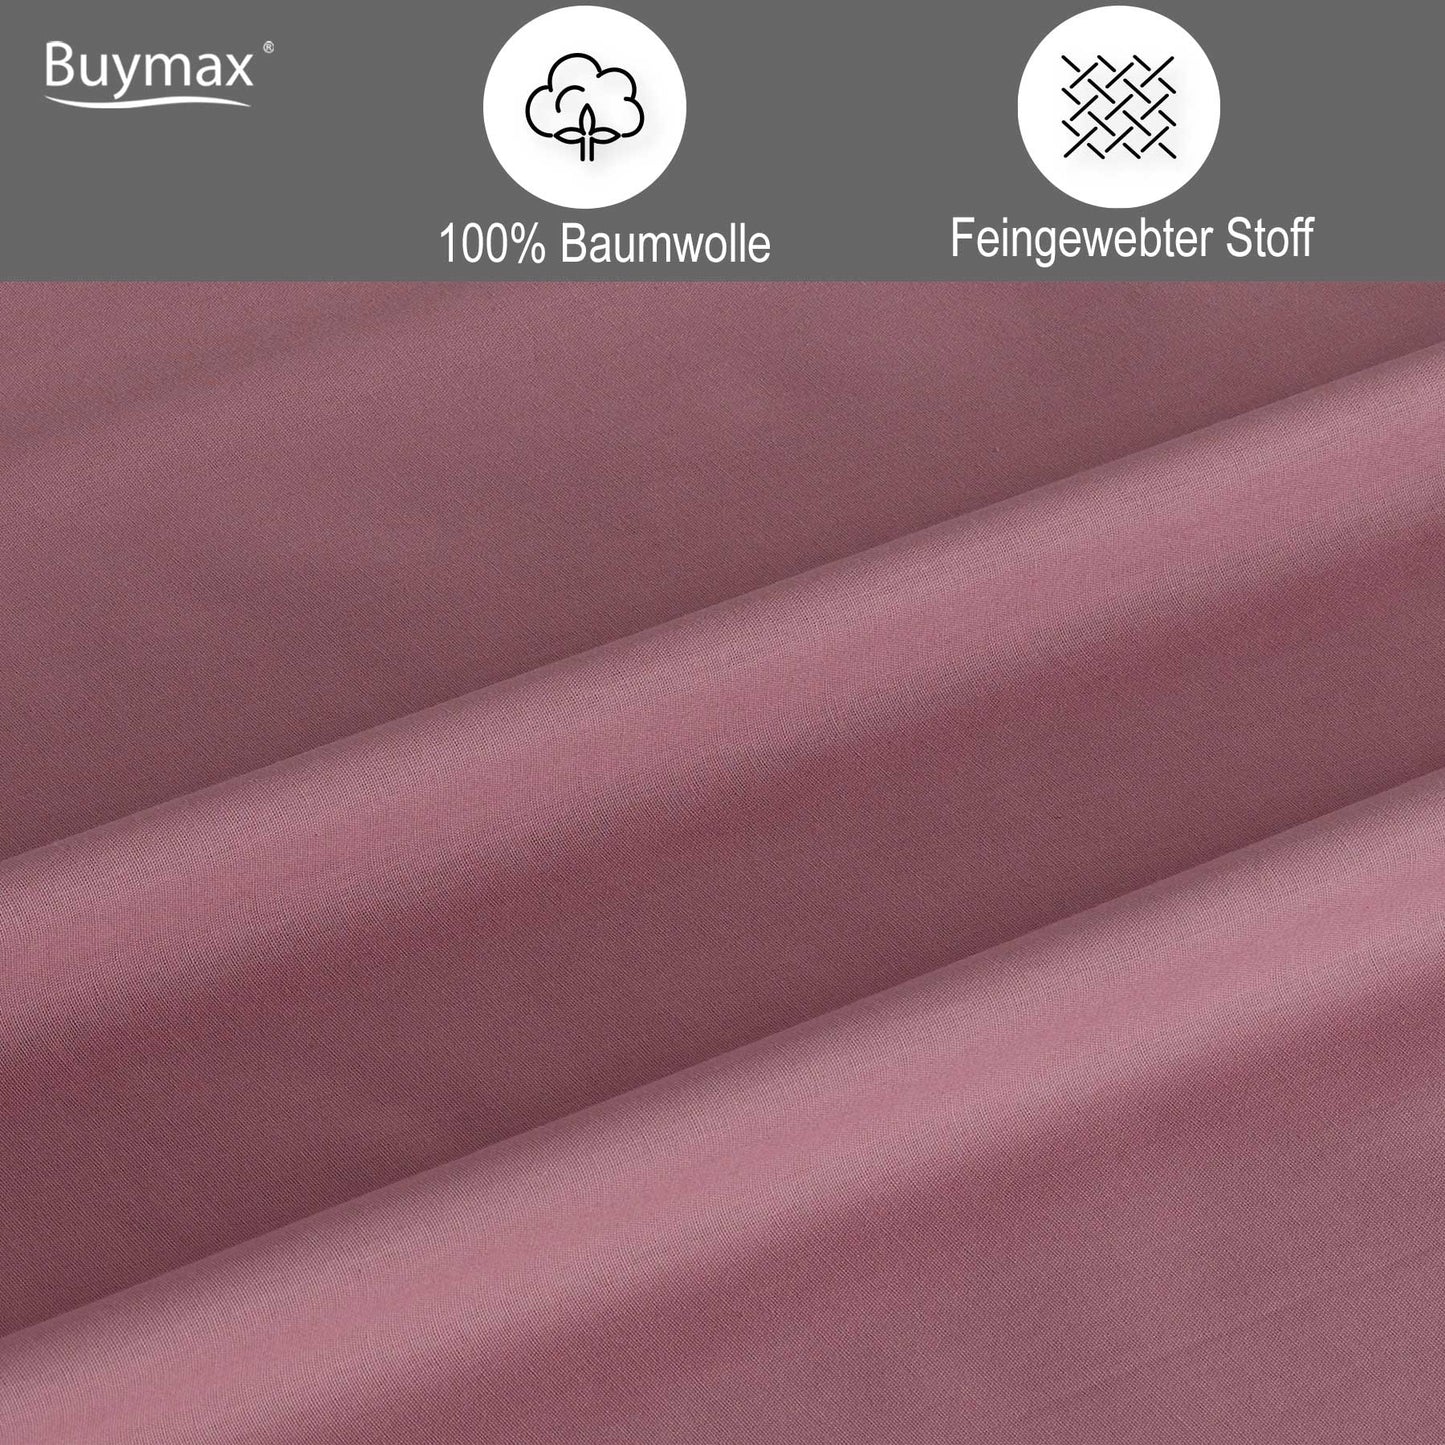 Uni Renforce Bettwäsche von Buymax aus Baumwolle